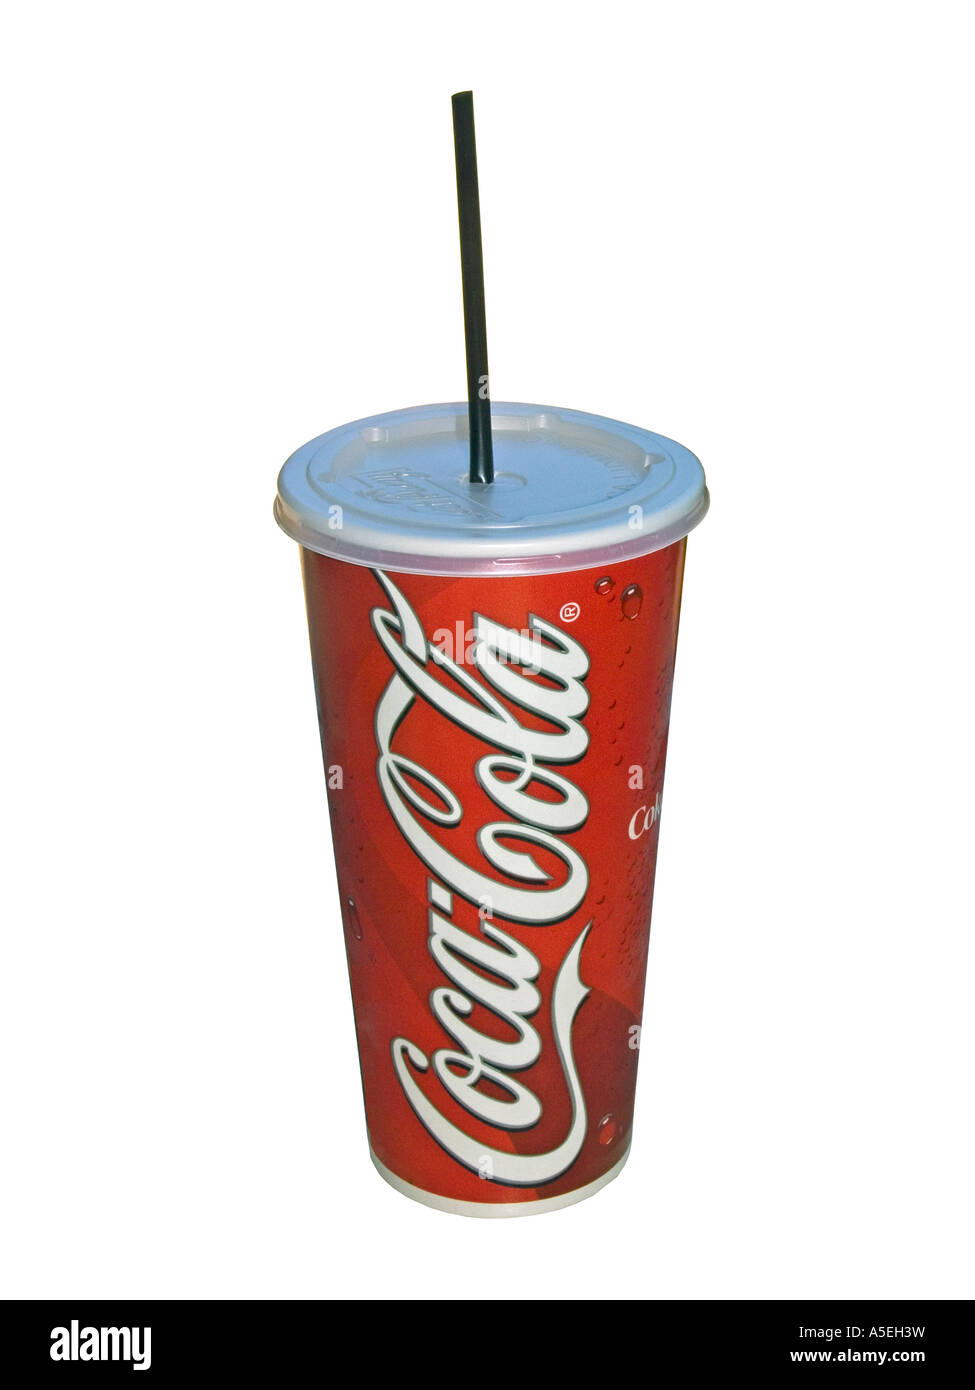 Coca cola pappbecher Ausgeschnittene Stockfotos und -bilder - Alamy